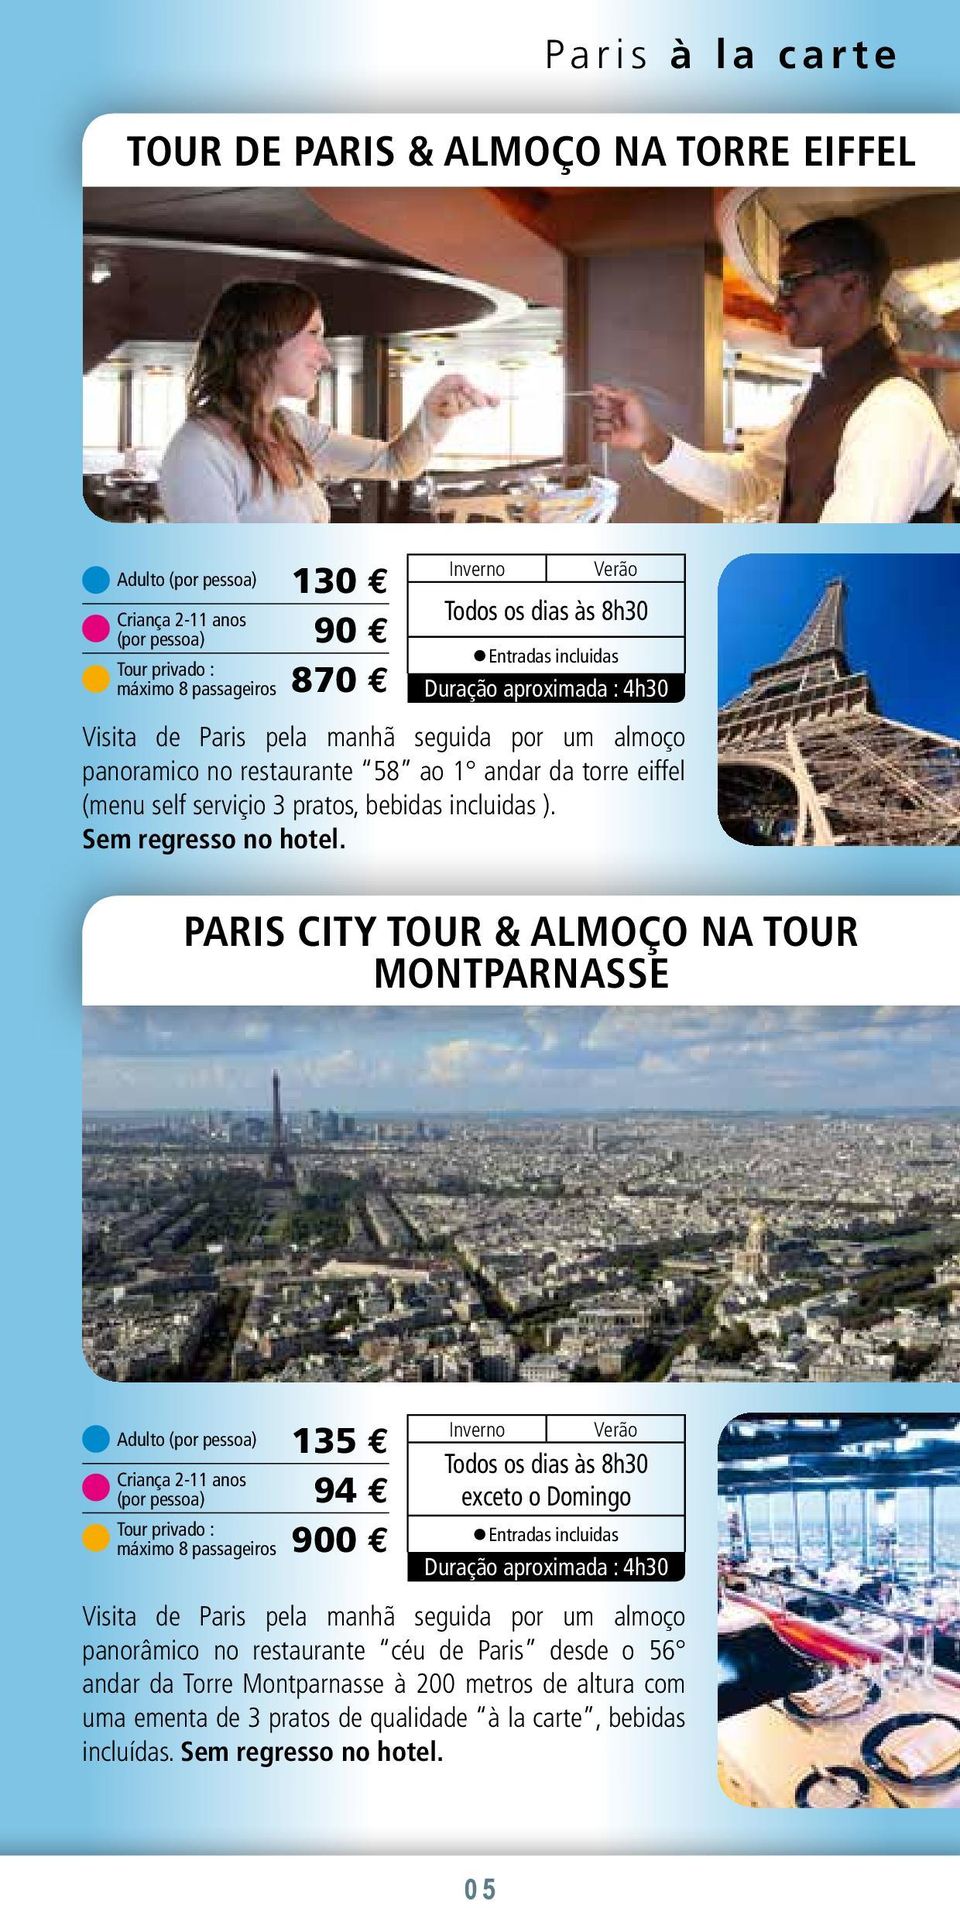 PARIS CITY TOUR & ALMOÇO NA TOUR MONTPARNASSE Criança 2-11 anos 135 E 94 E 900 E Todos os dias às 8h30 exceto o Domingo Duração aproximada : 4h30 Visita de Paris pela manhã